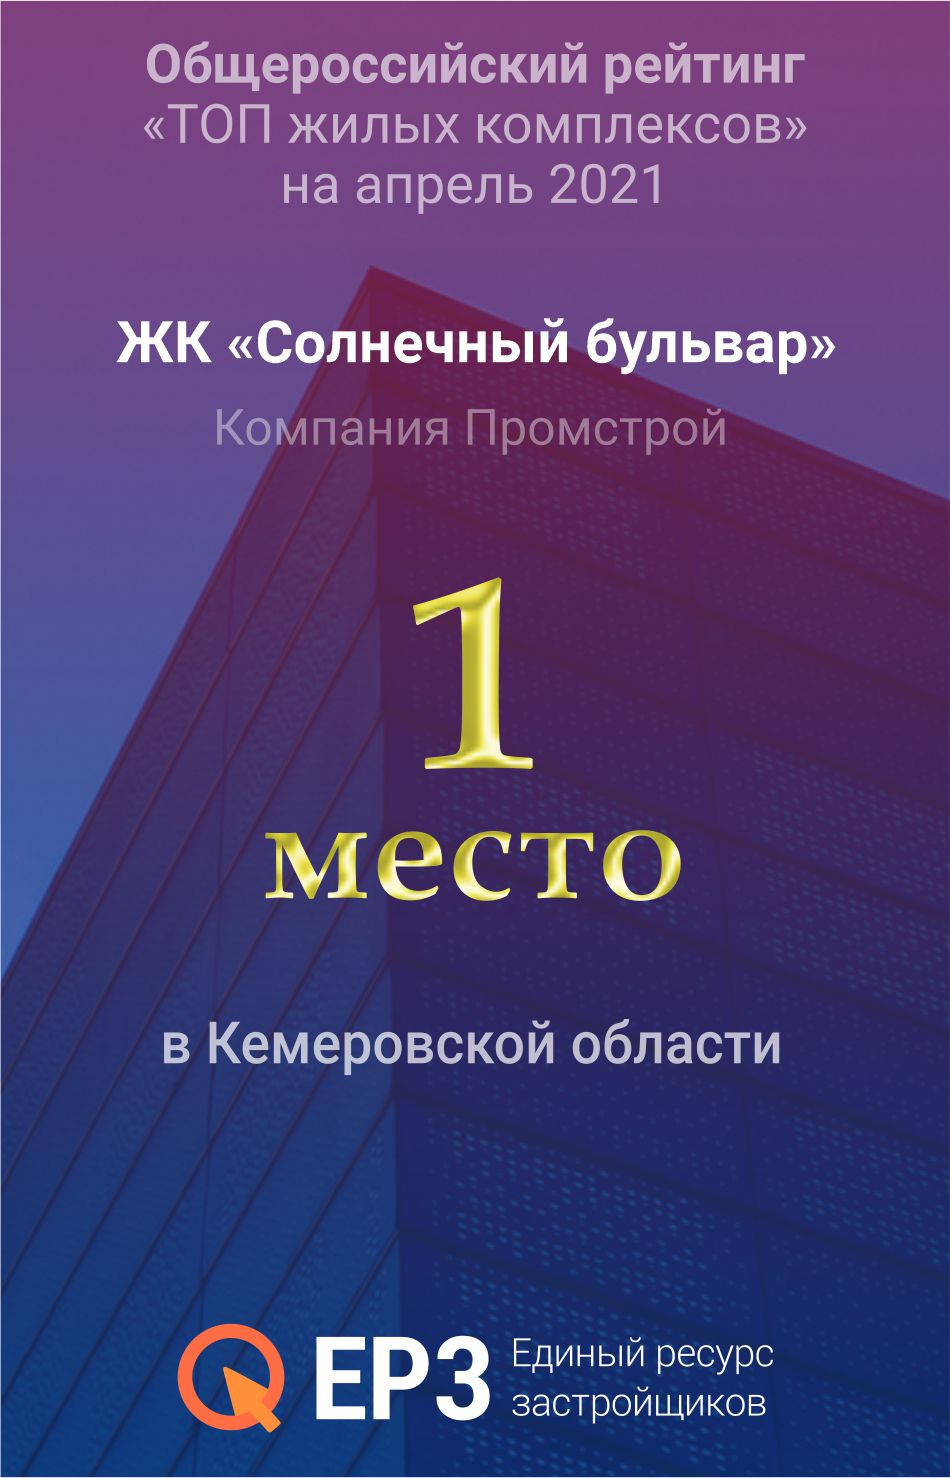 Жилой комплекс "Солнечный бульвар" компании "Промстрой" признан лучшим в Кемеровской области